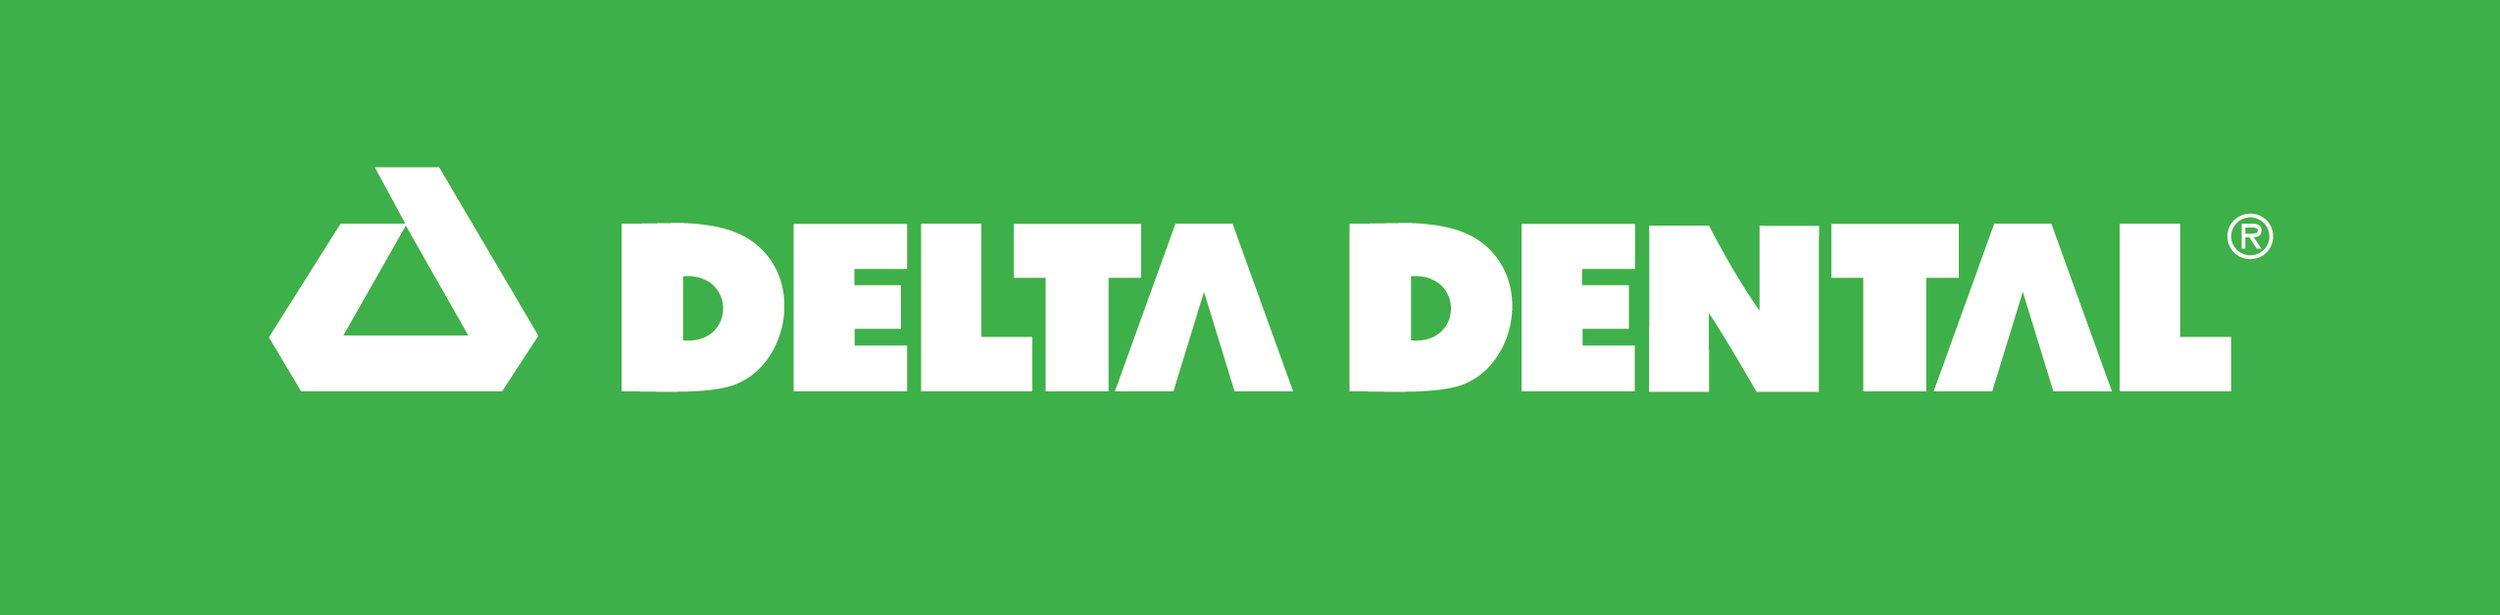 Delta Dental logo.jpg